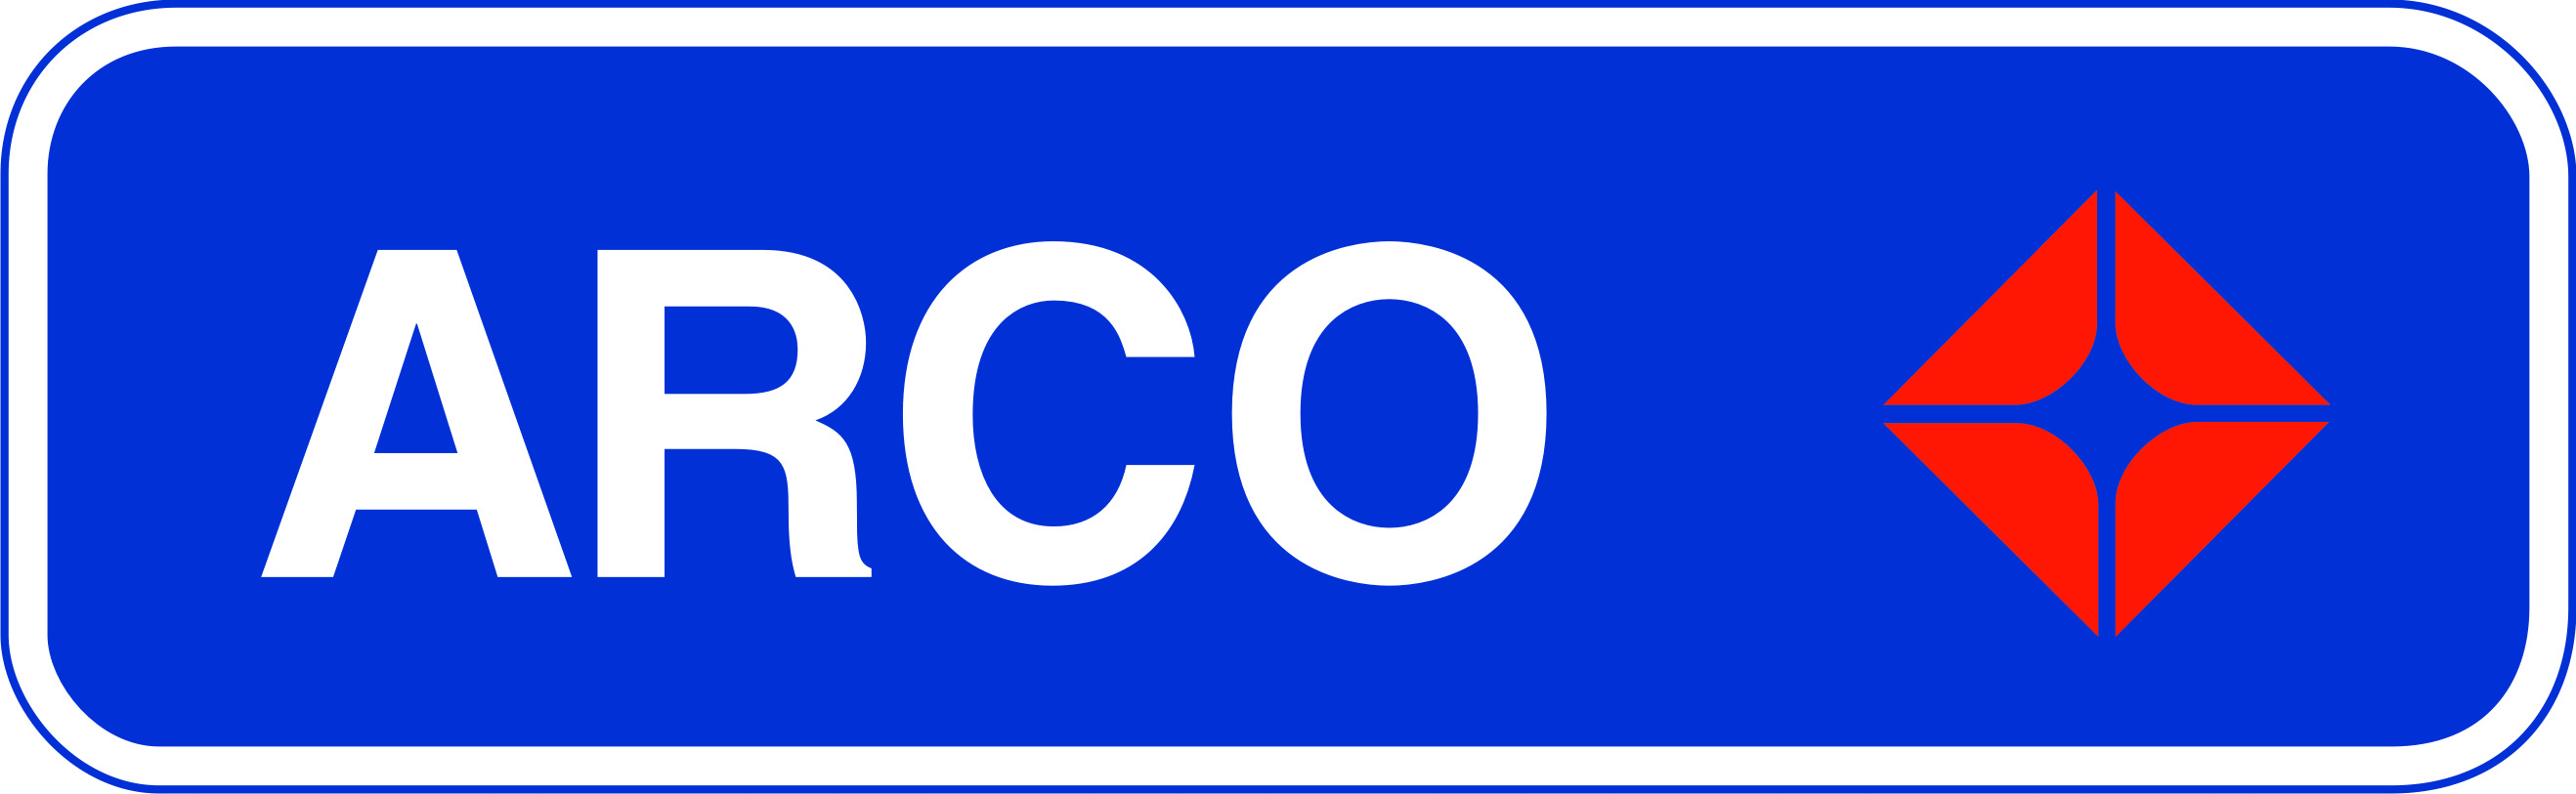 Arco Logo Vector PNG - 109658